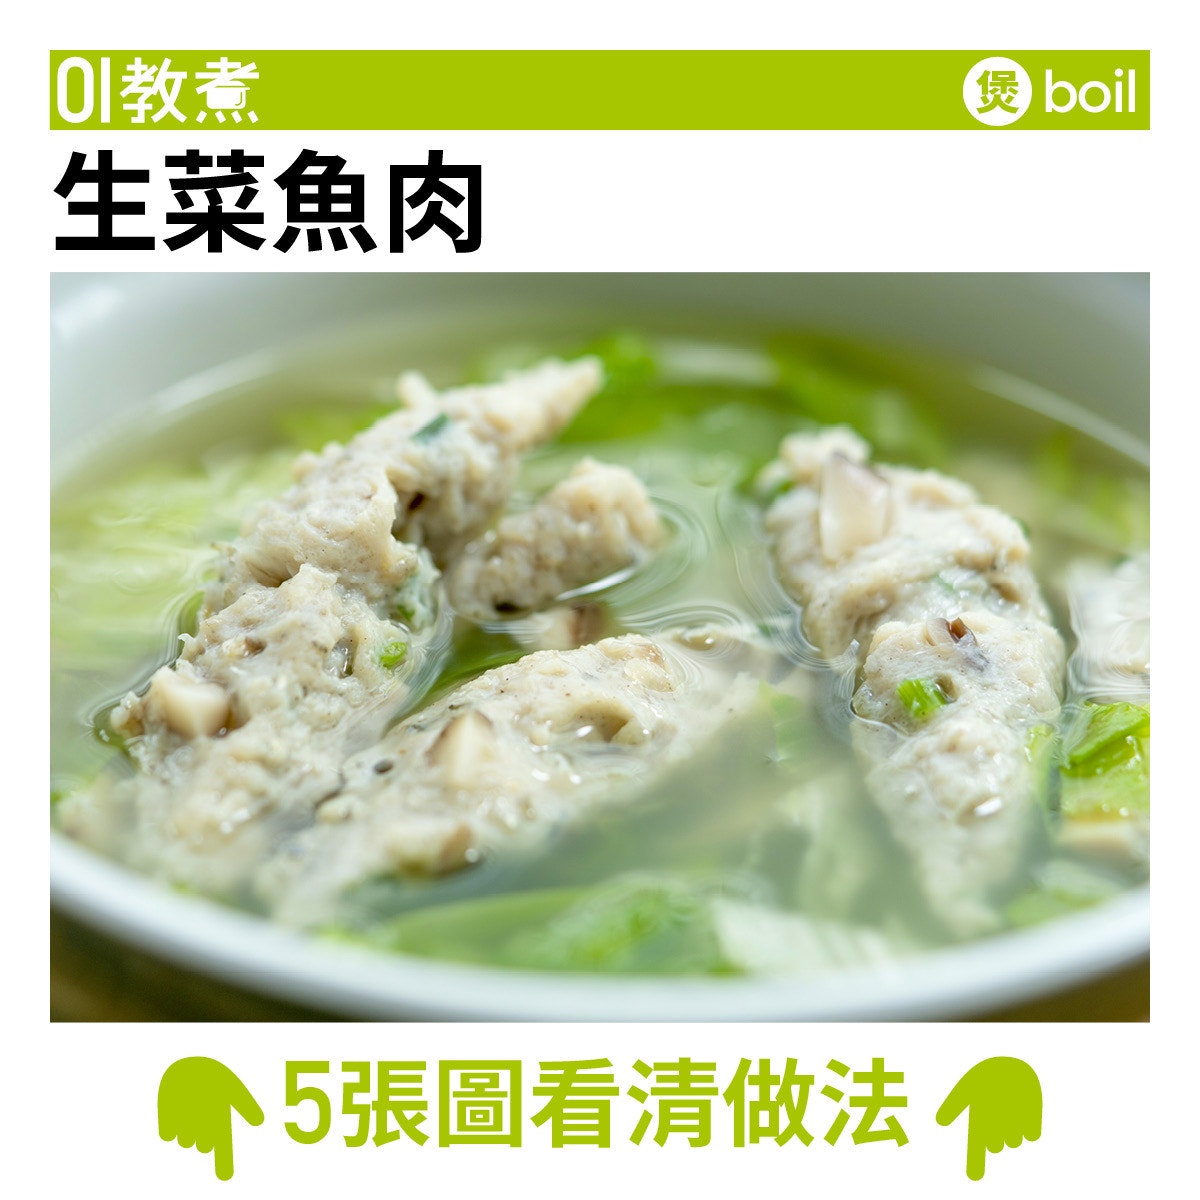 生菜魚肉食譜 自家製街頭小食加冬菇粒更有咬口 香港01 教煮